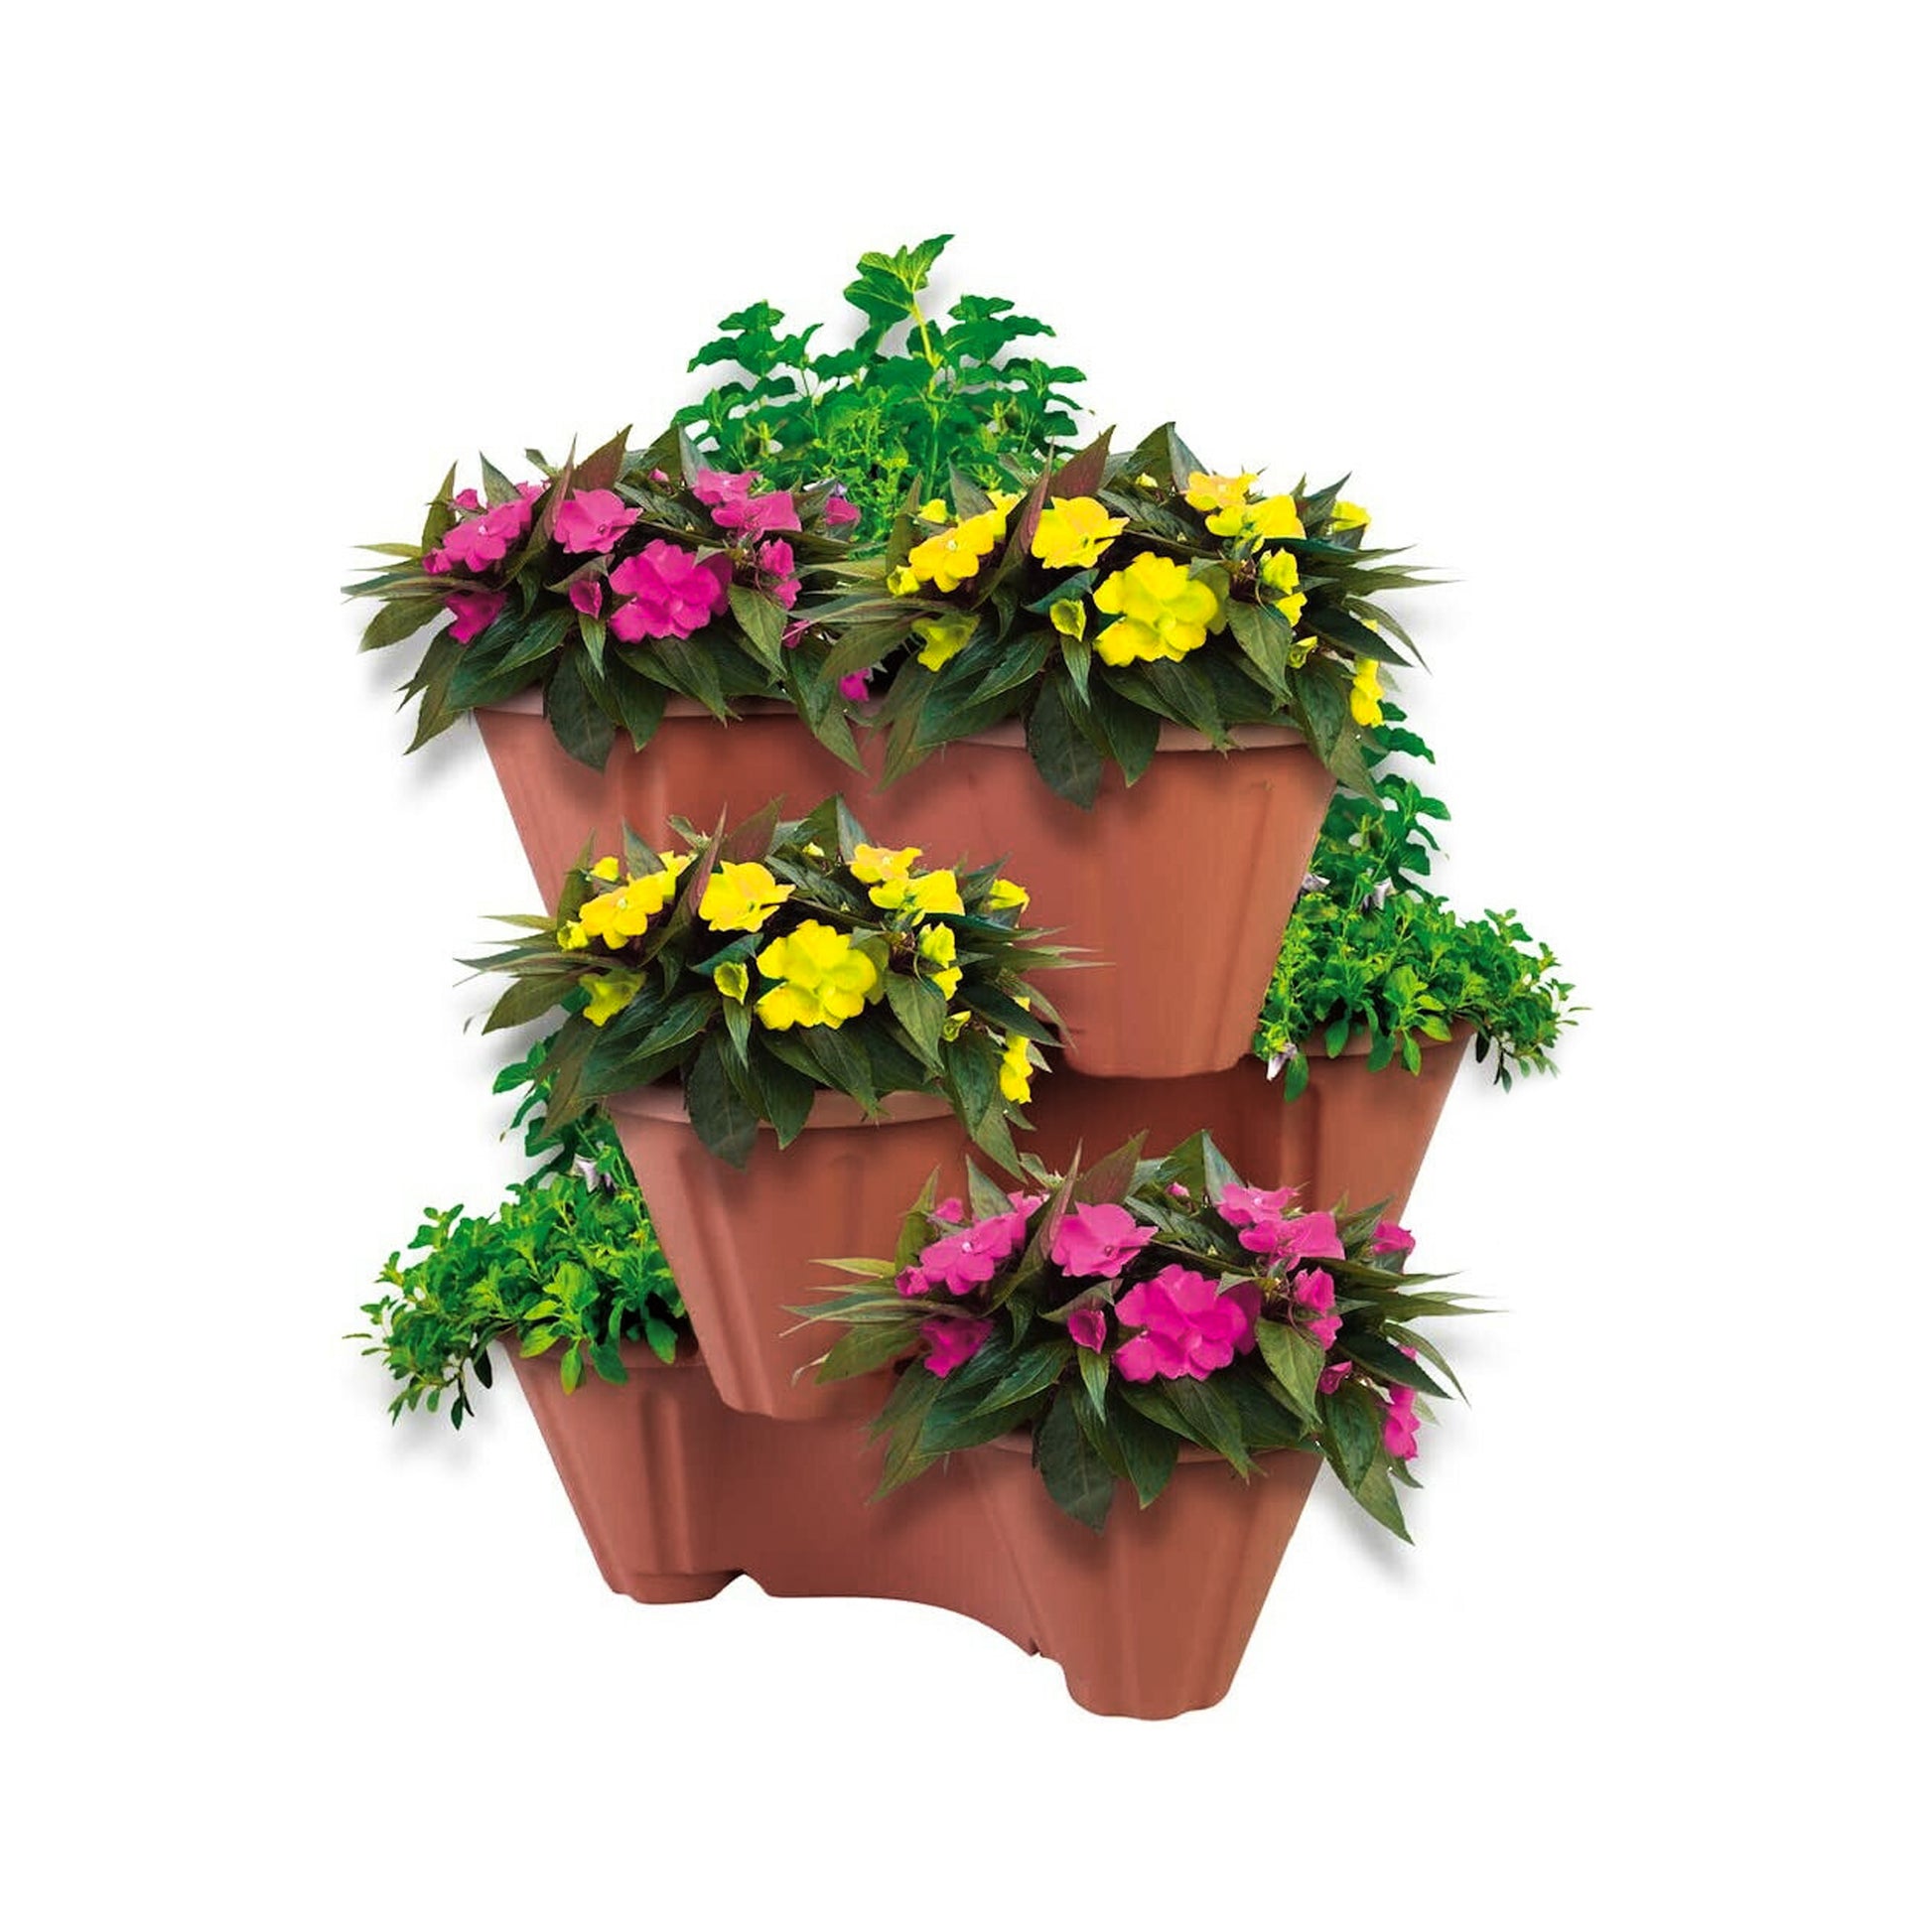 Strawberry/ Herb/ Flower Pot by GEEZY - UKBuyZone